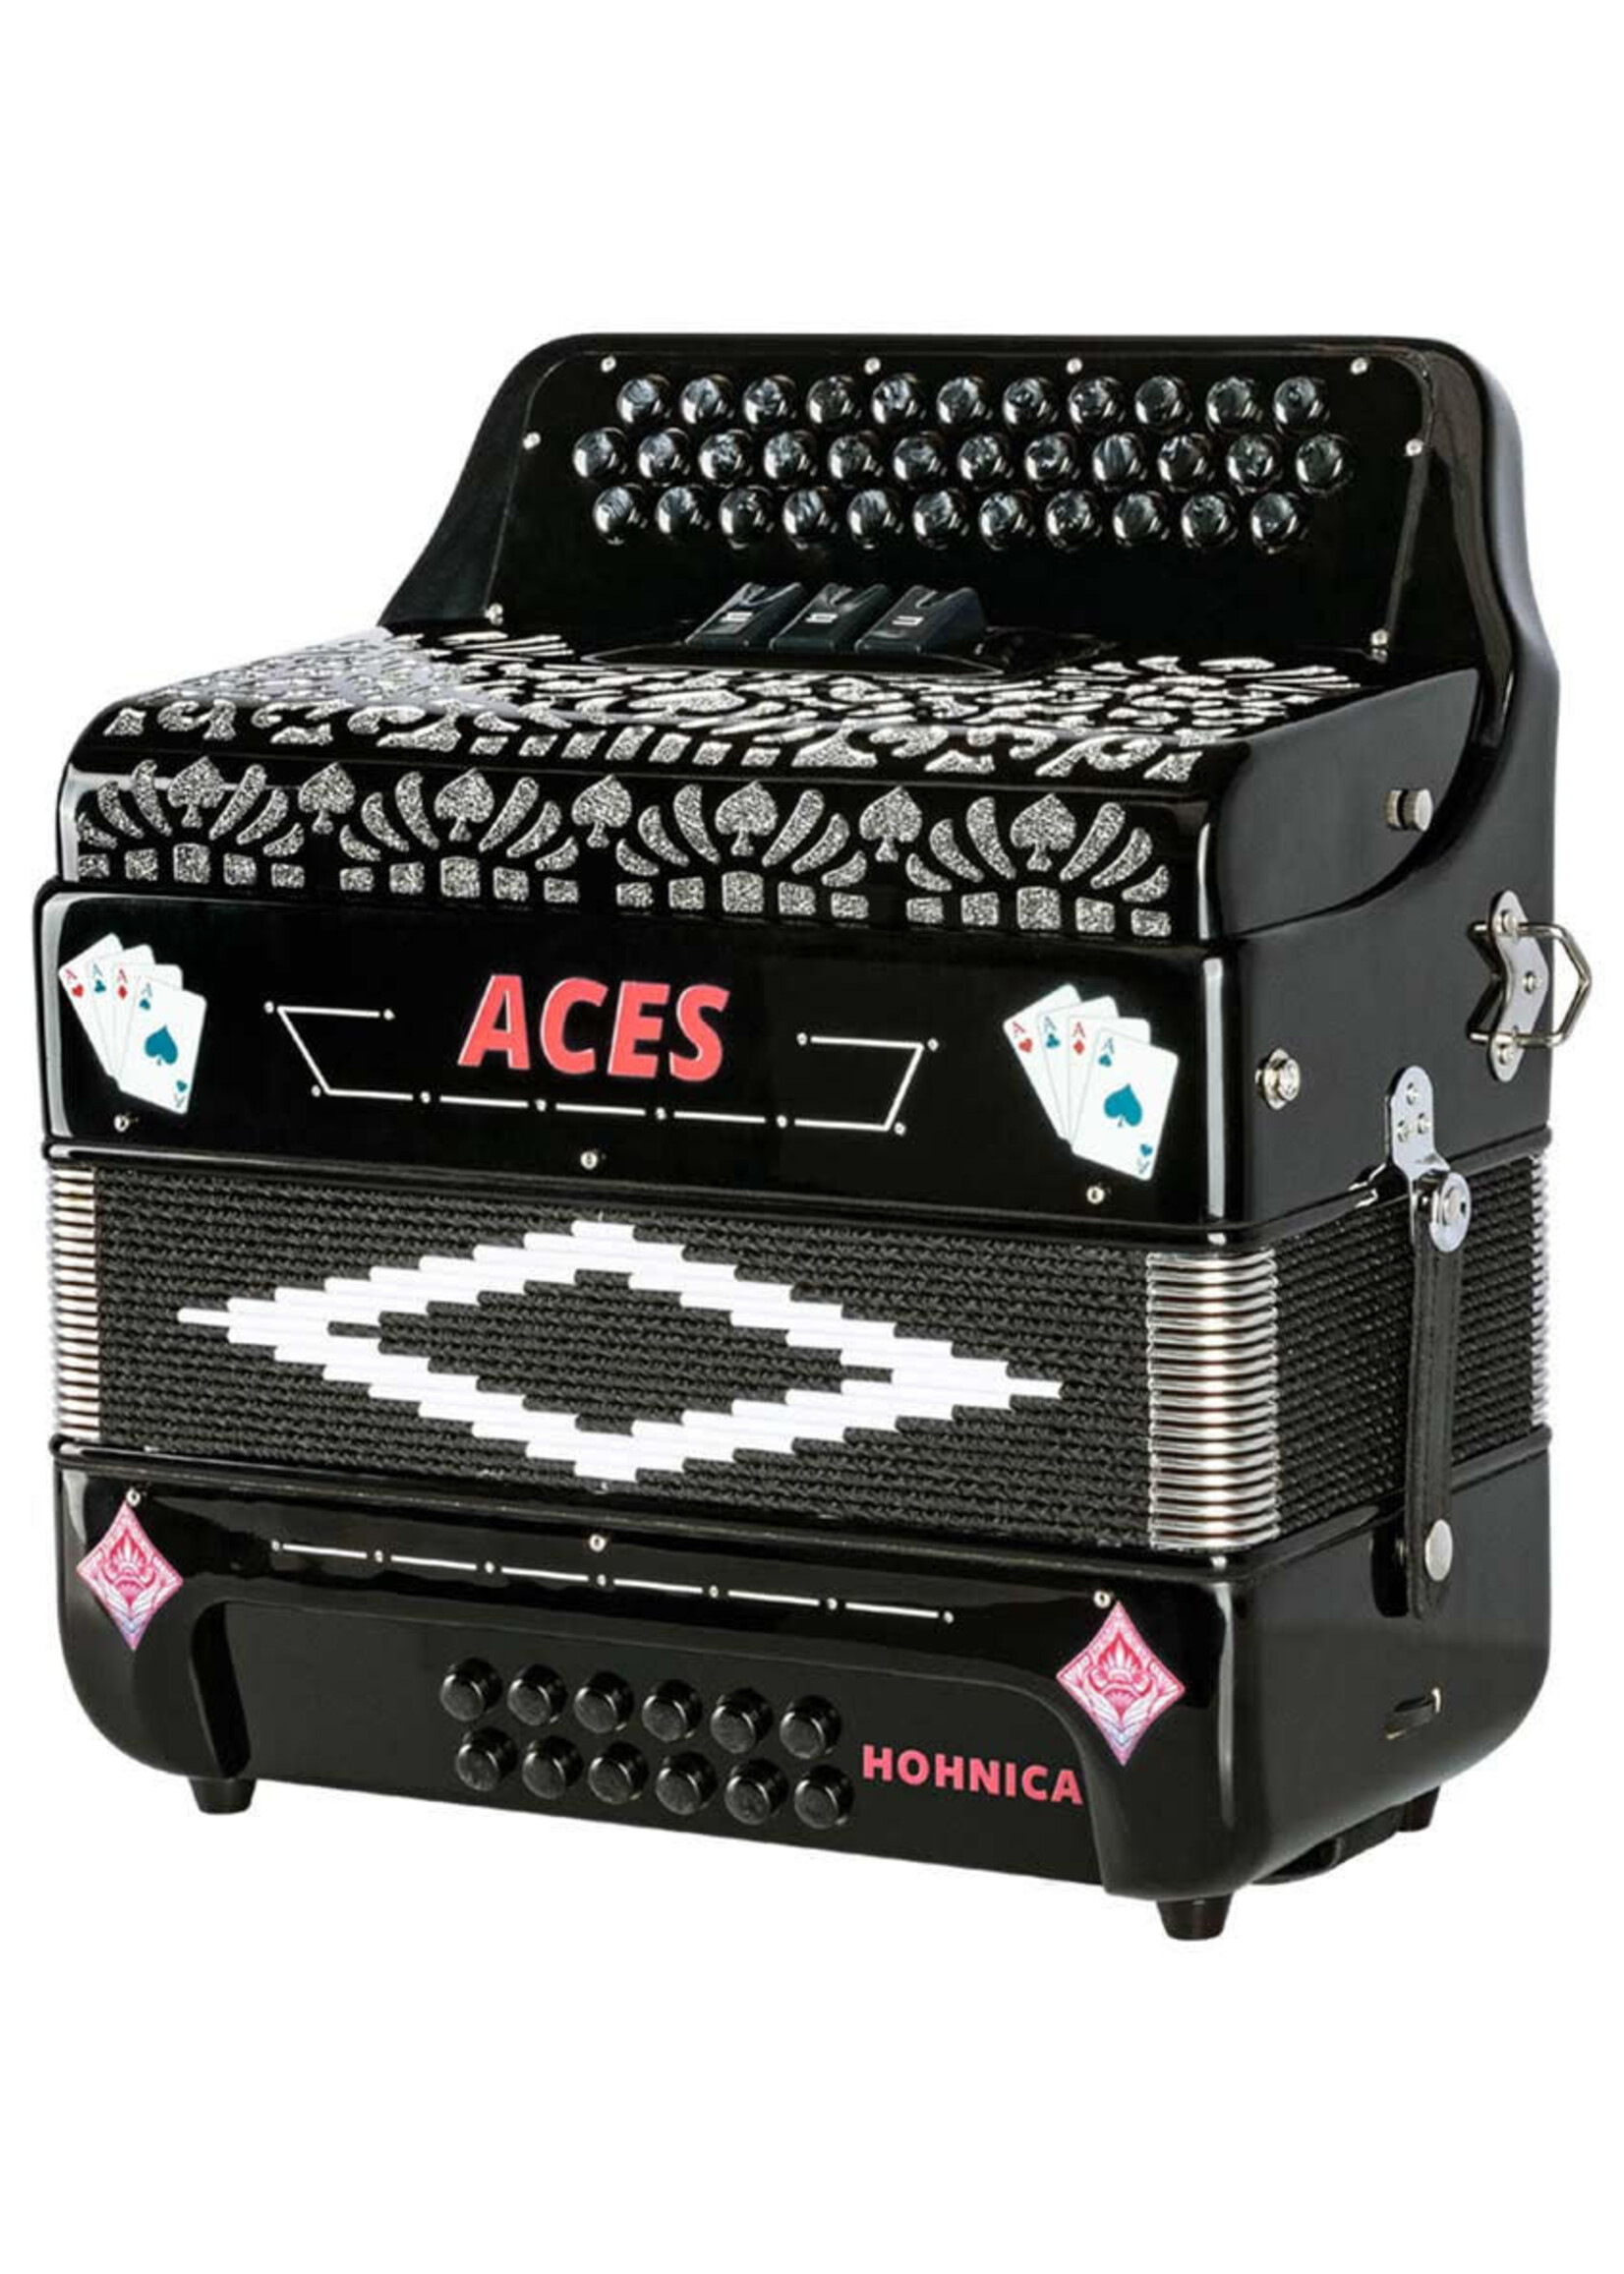 Hohnica Hohnica Aces II FBbEb 3 Register Accordion - Black